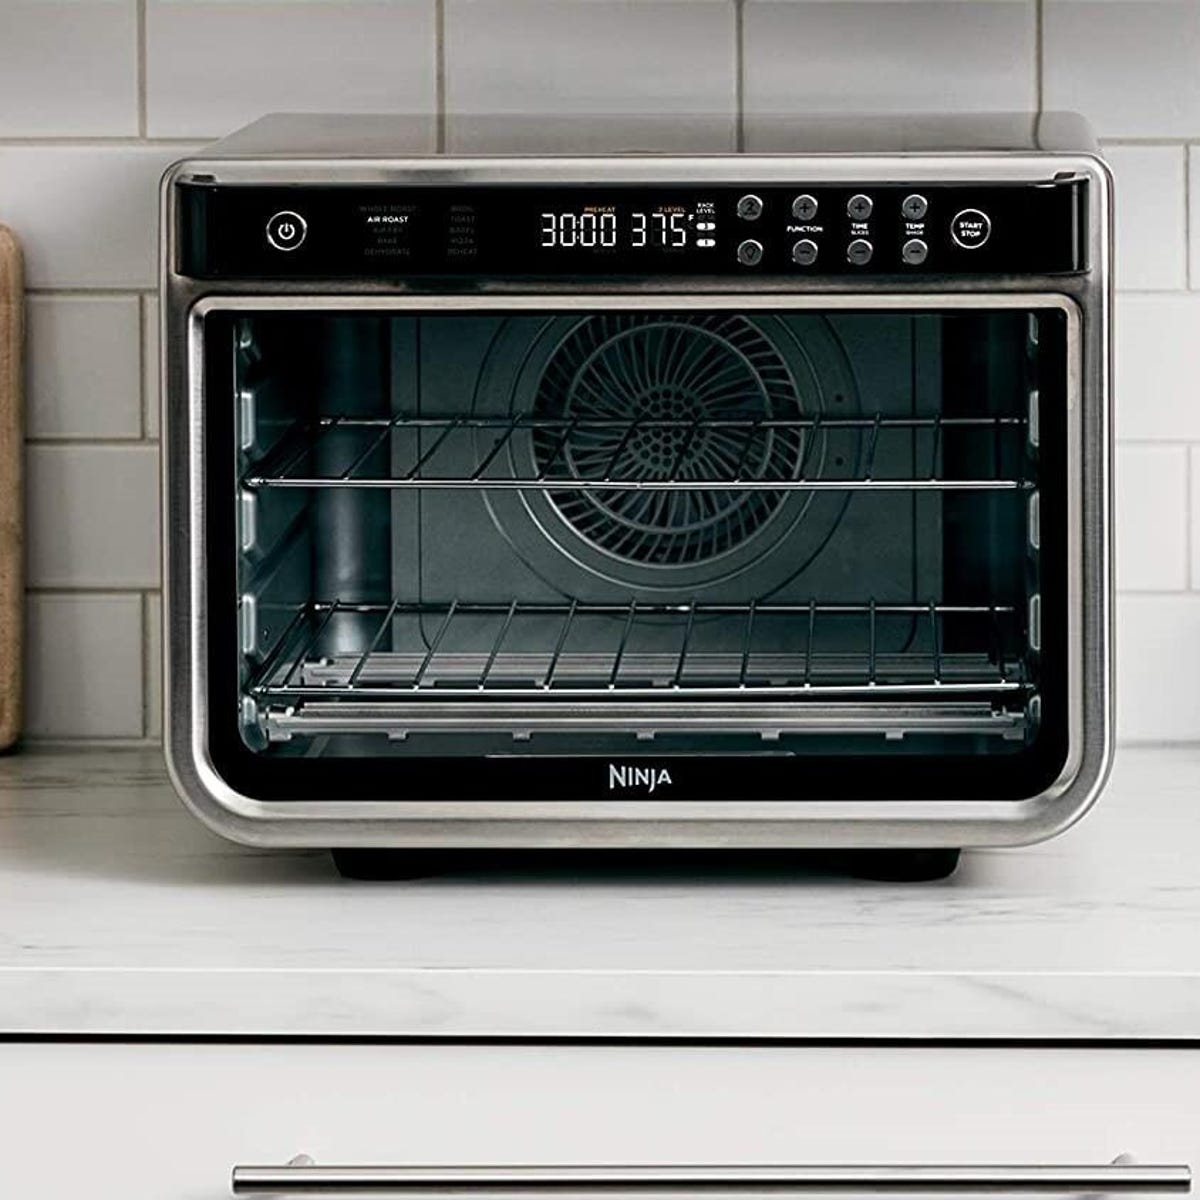 Save $100 on Ninja's Versatile 10-in-1 Foodi XL Pro Toaster Oven